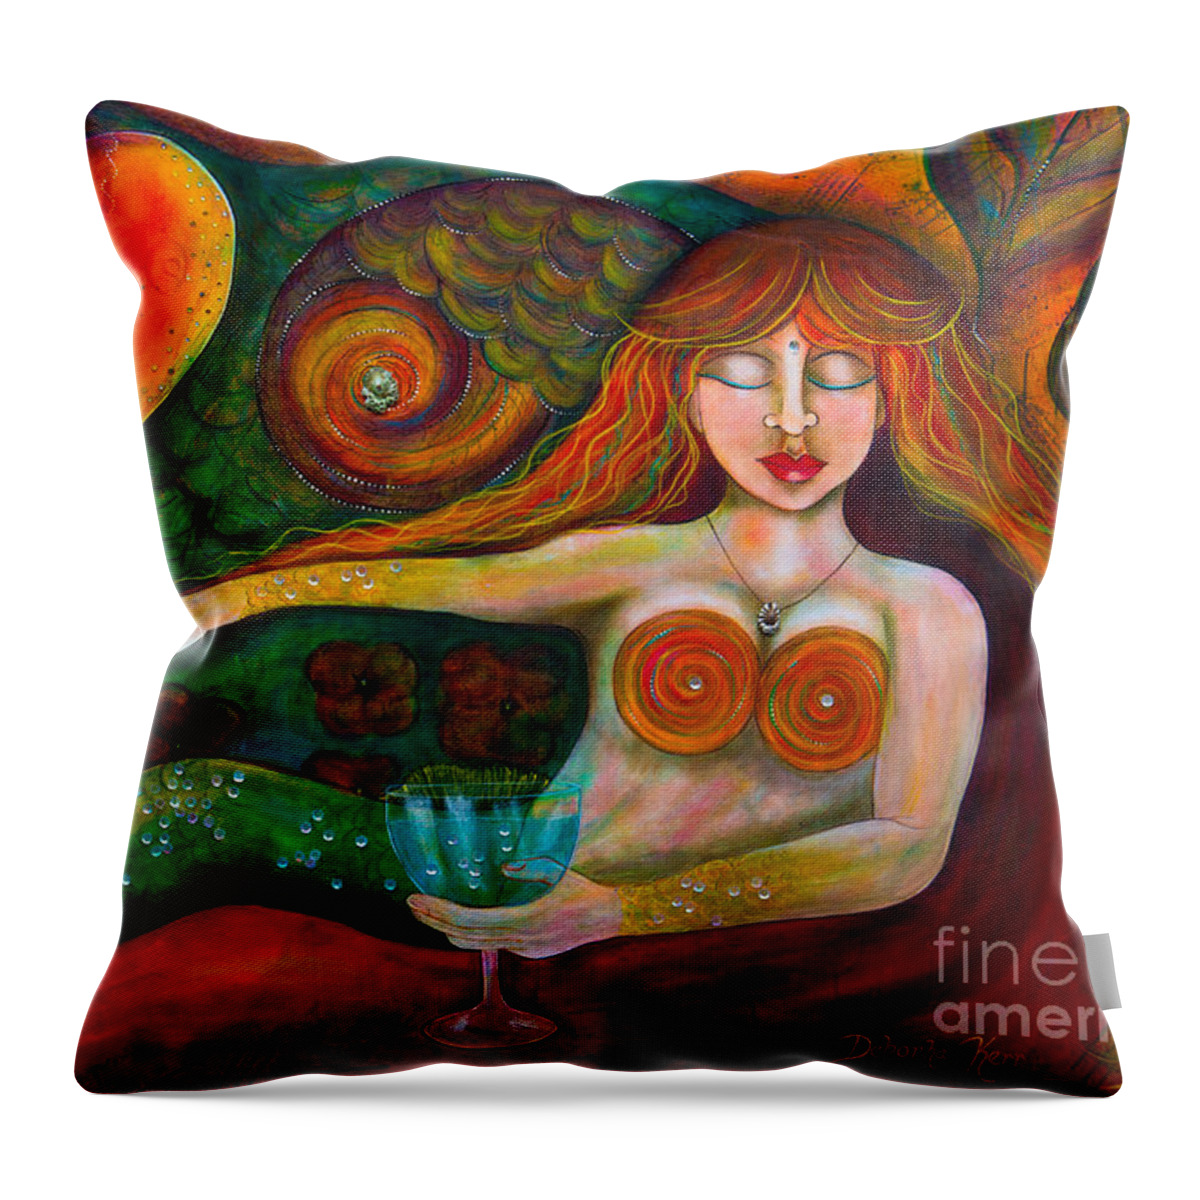 Mermaid Art Throw Pillow featuring the painting Mermaid Musing by Deborha Kerr